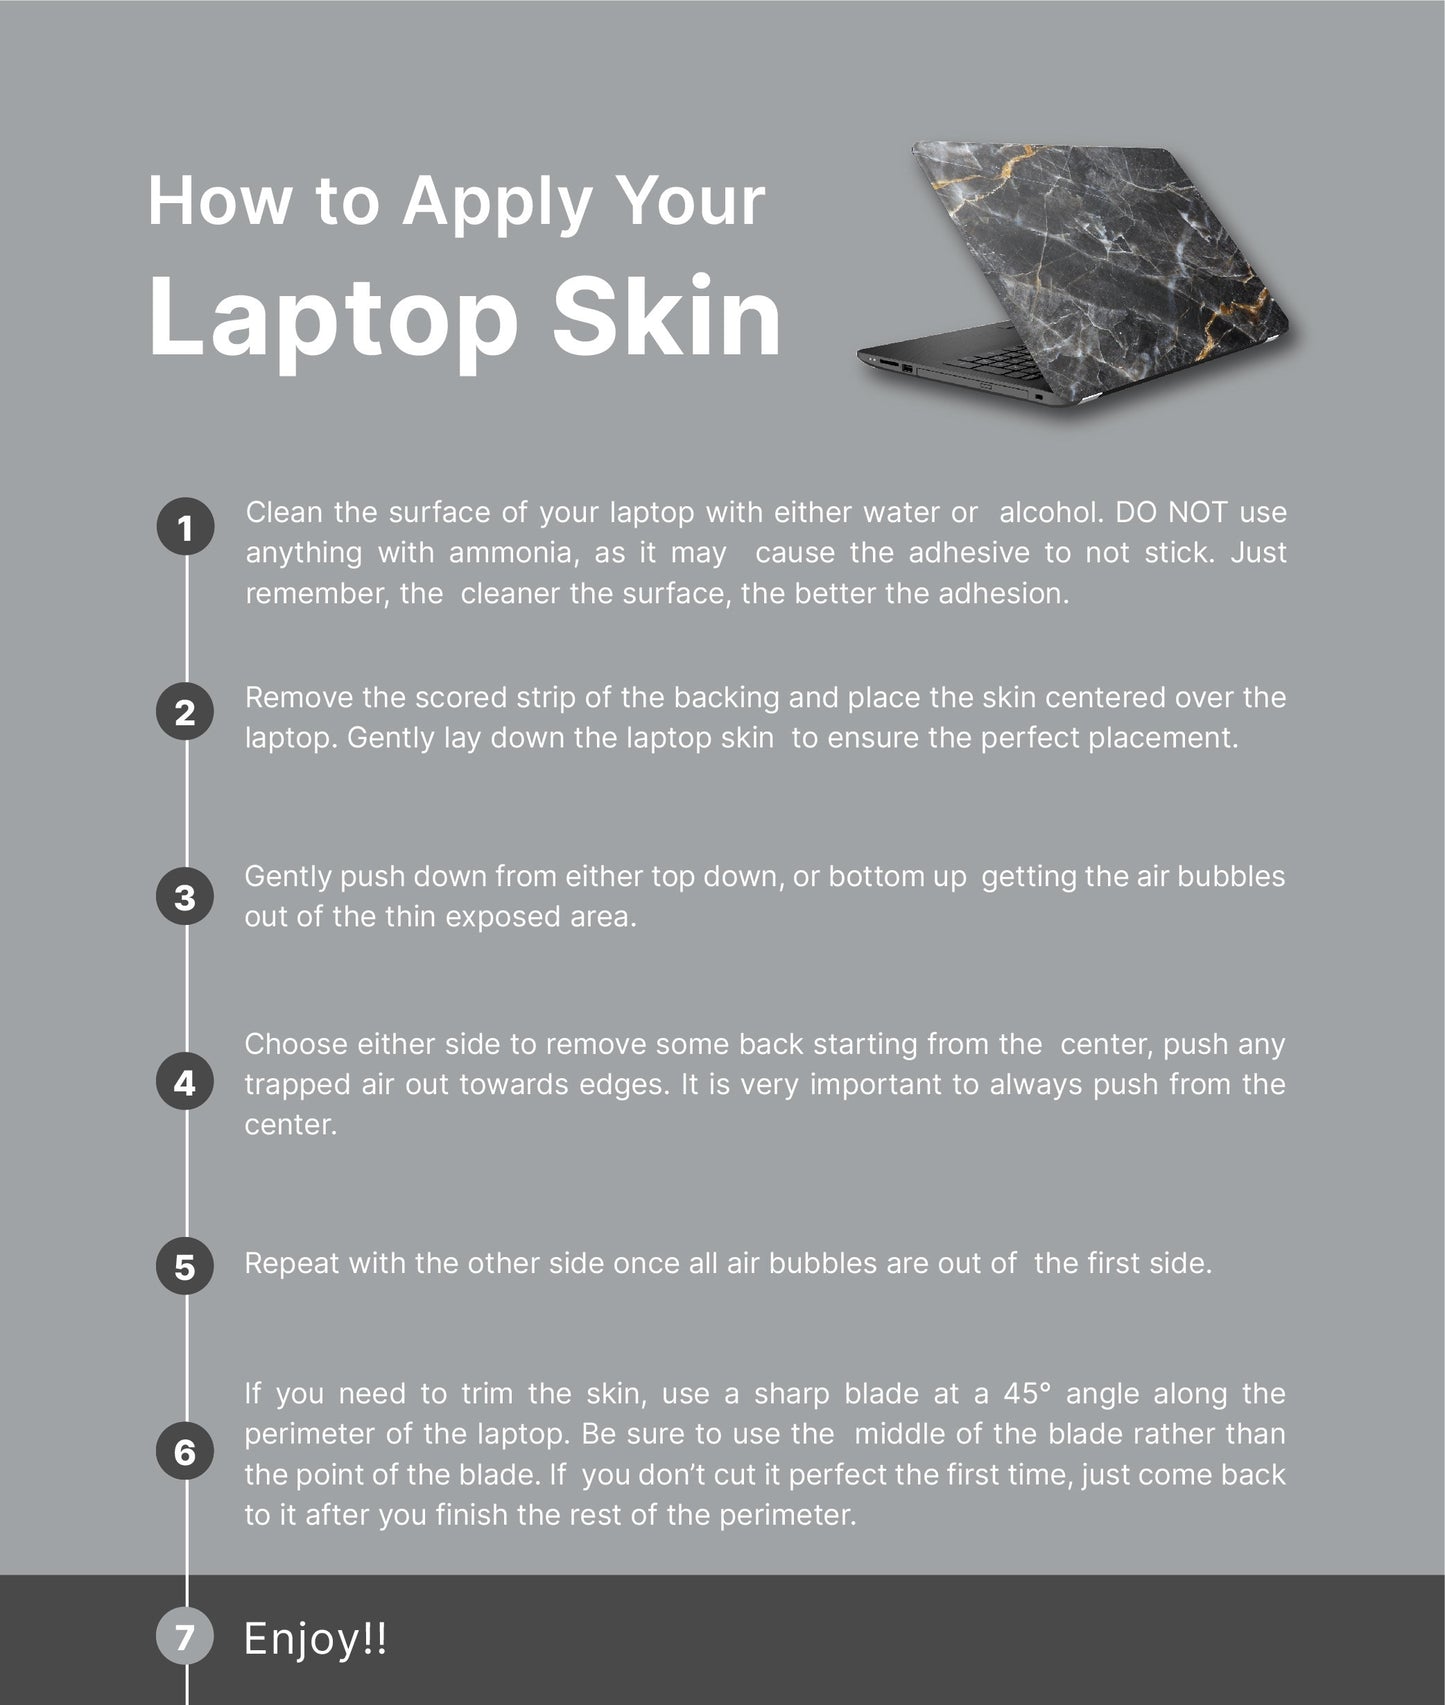 Golden Sunset Laptop Skin, Laptop Cover, Laptop Skins, Removable Laptop Skins, Laptop Decal, Customized Laptop Skin, Laptop Stickers 213